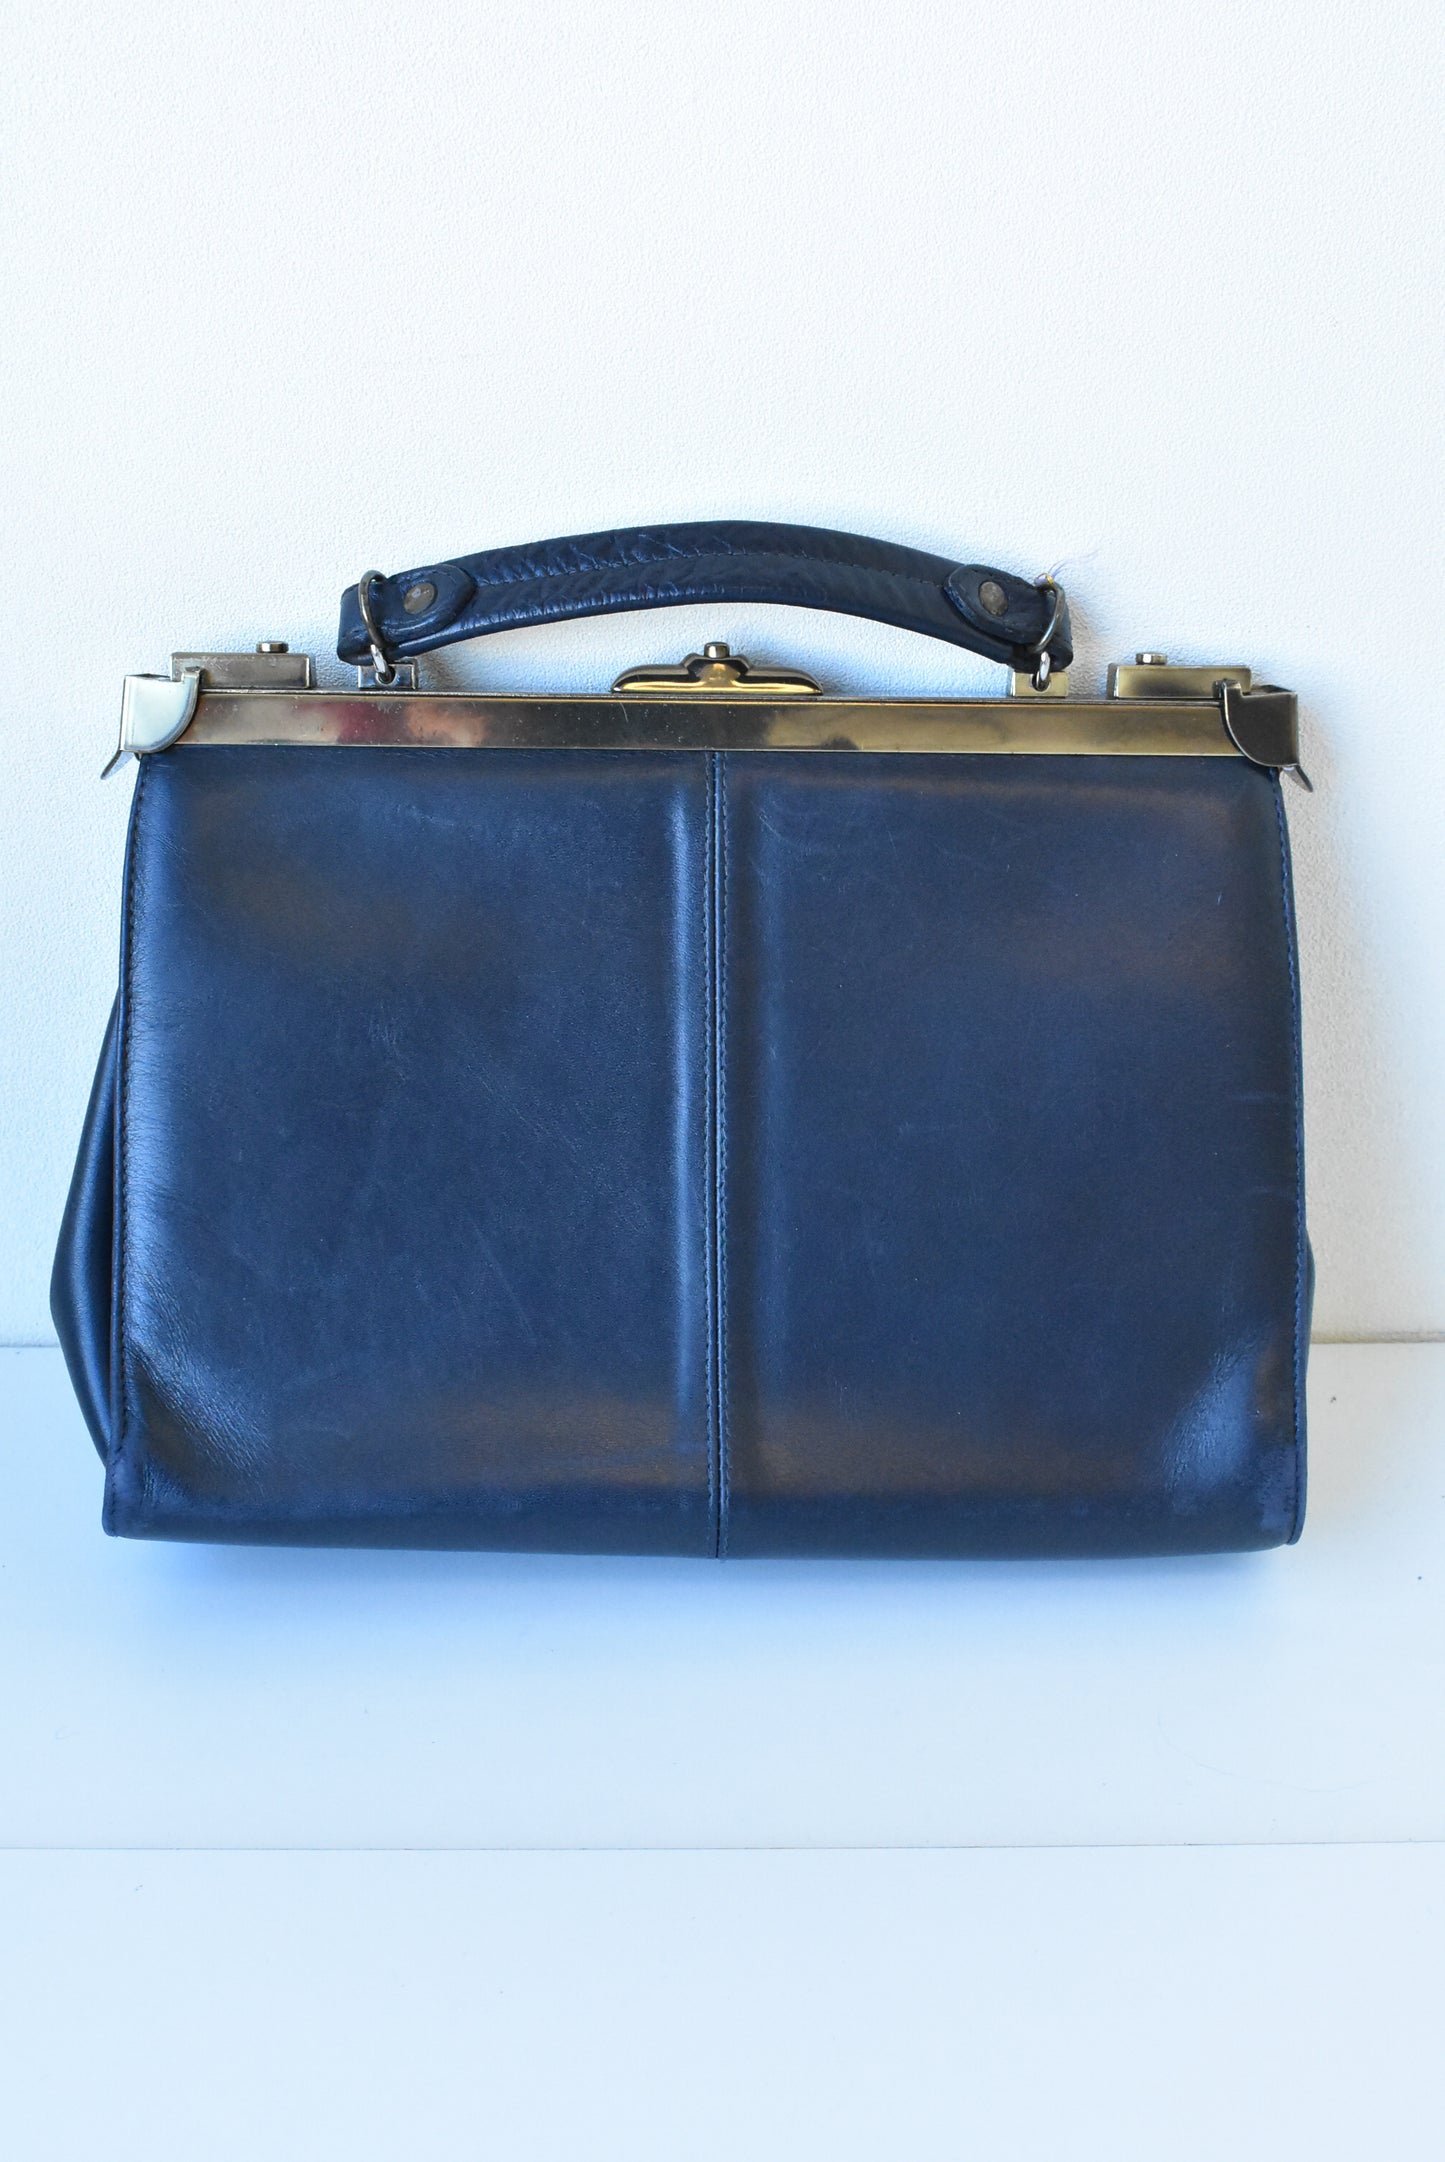 Florian (faux?) dark navy handbag